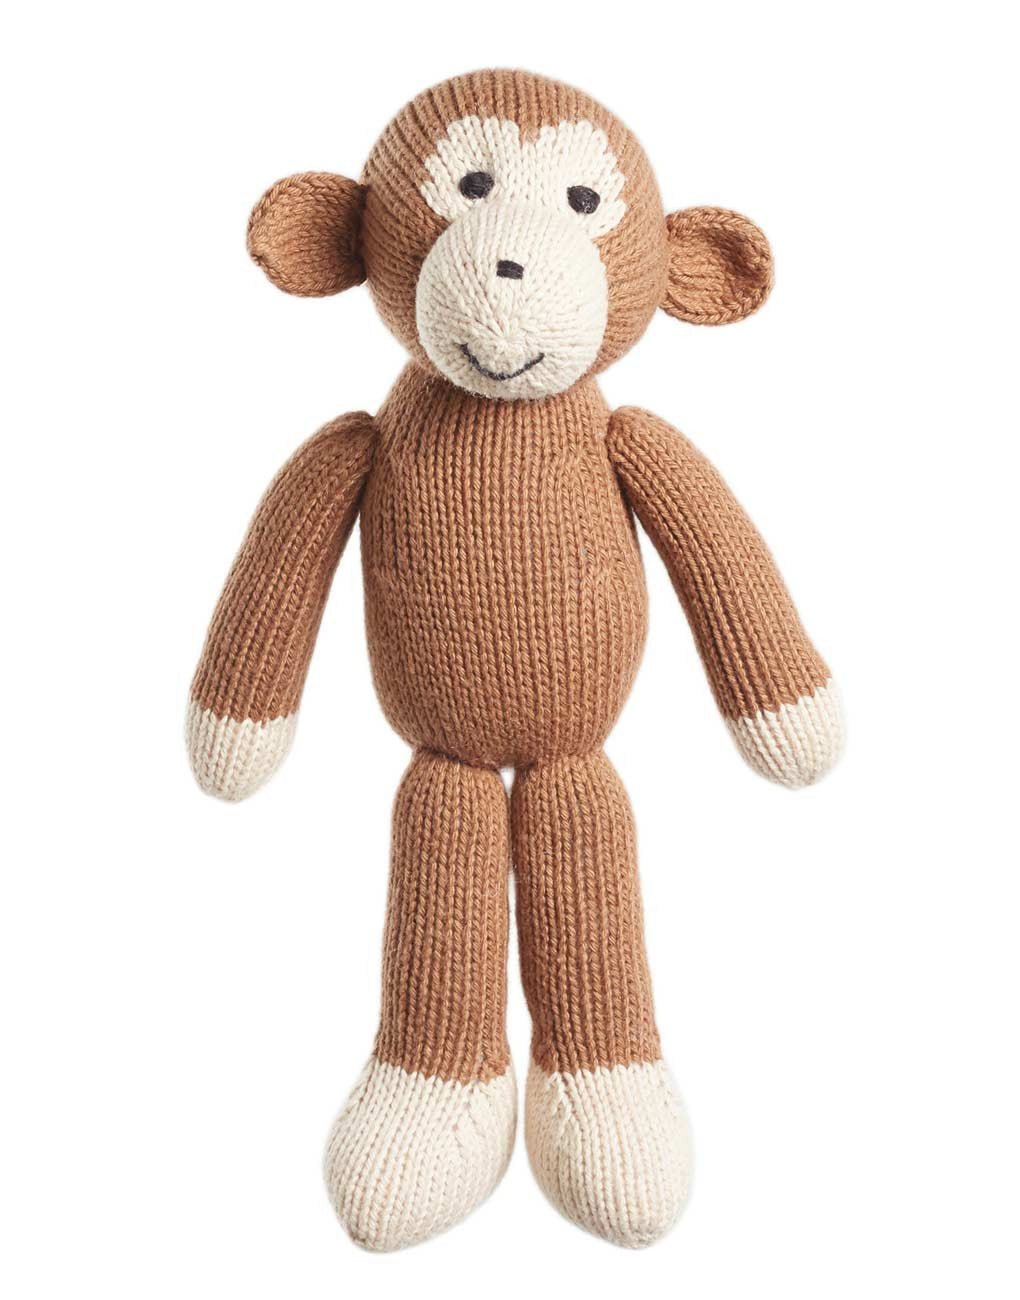 small stuffed monkey toy